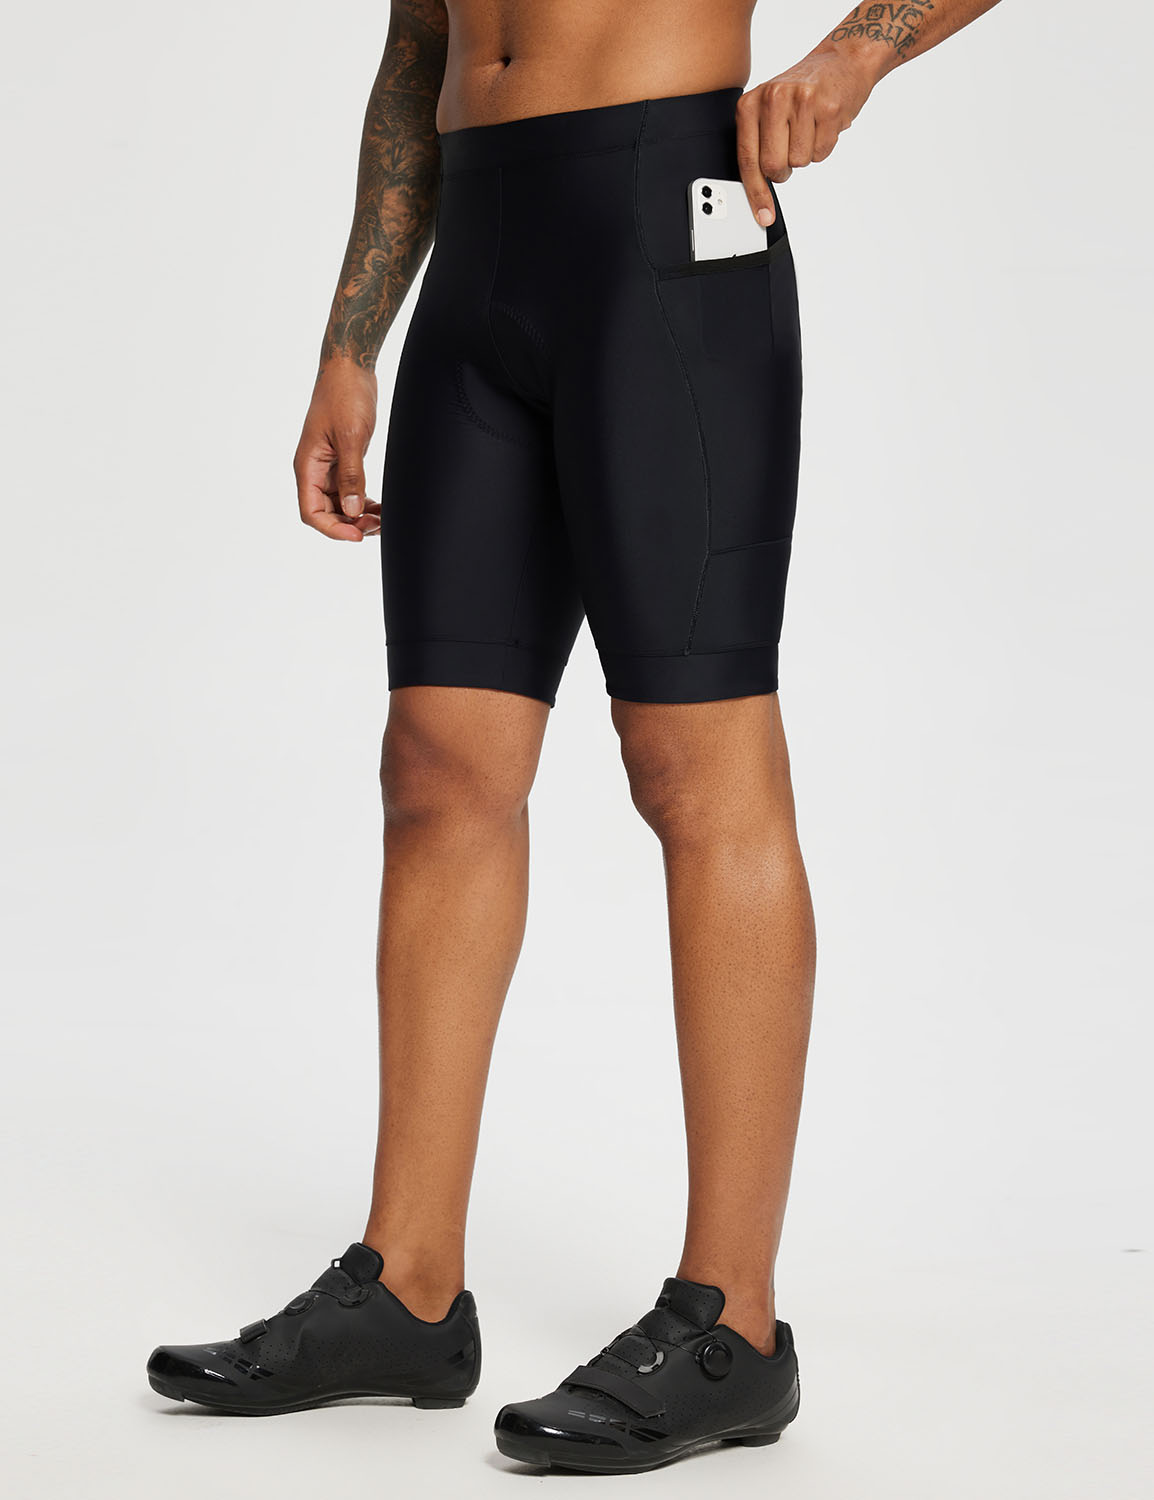 Baleaf Men's Airide 4D Padded MTB Shorts eai016 Black Side